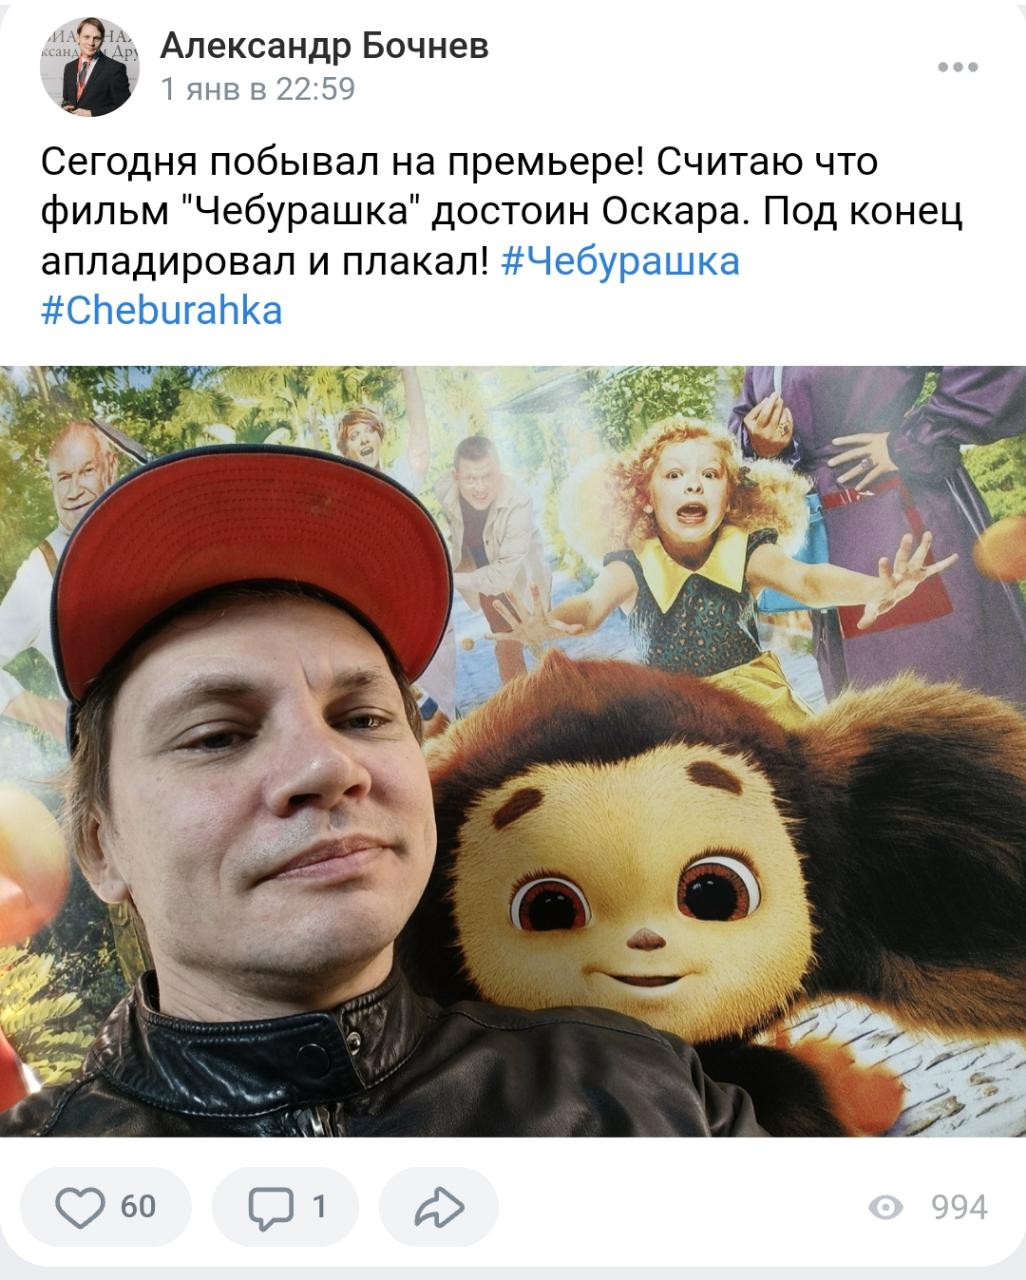 Бес попутал: журналист из Геленджика предложил переименовать Киевскую улицу